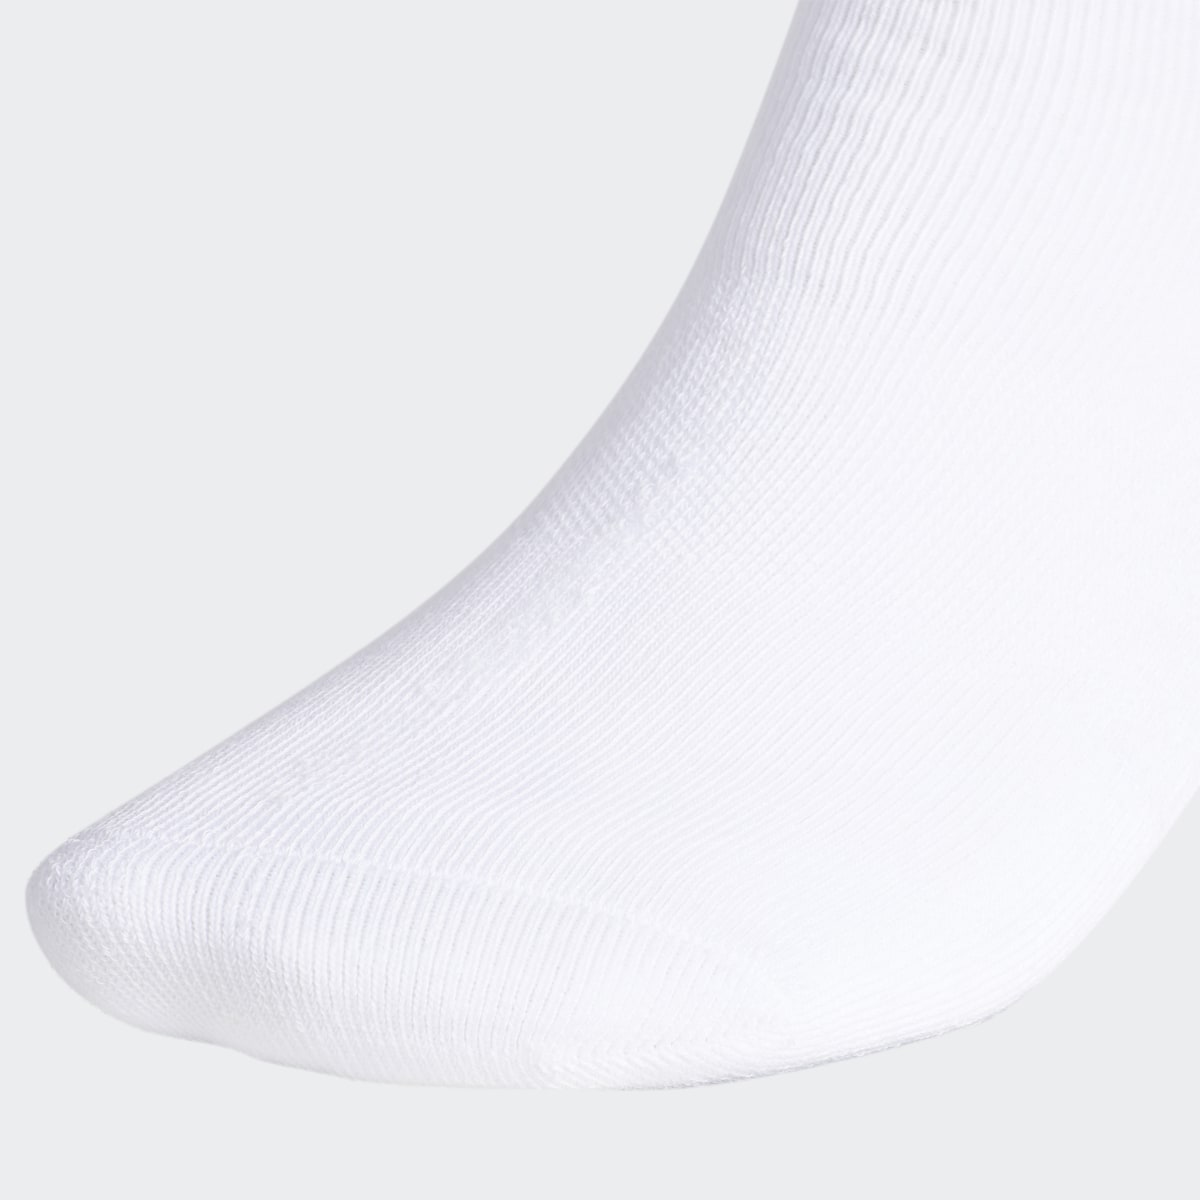 Adidas Trefoil Crew Socks 6 Pairs. 5